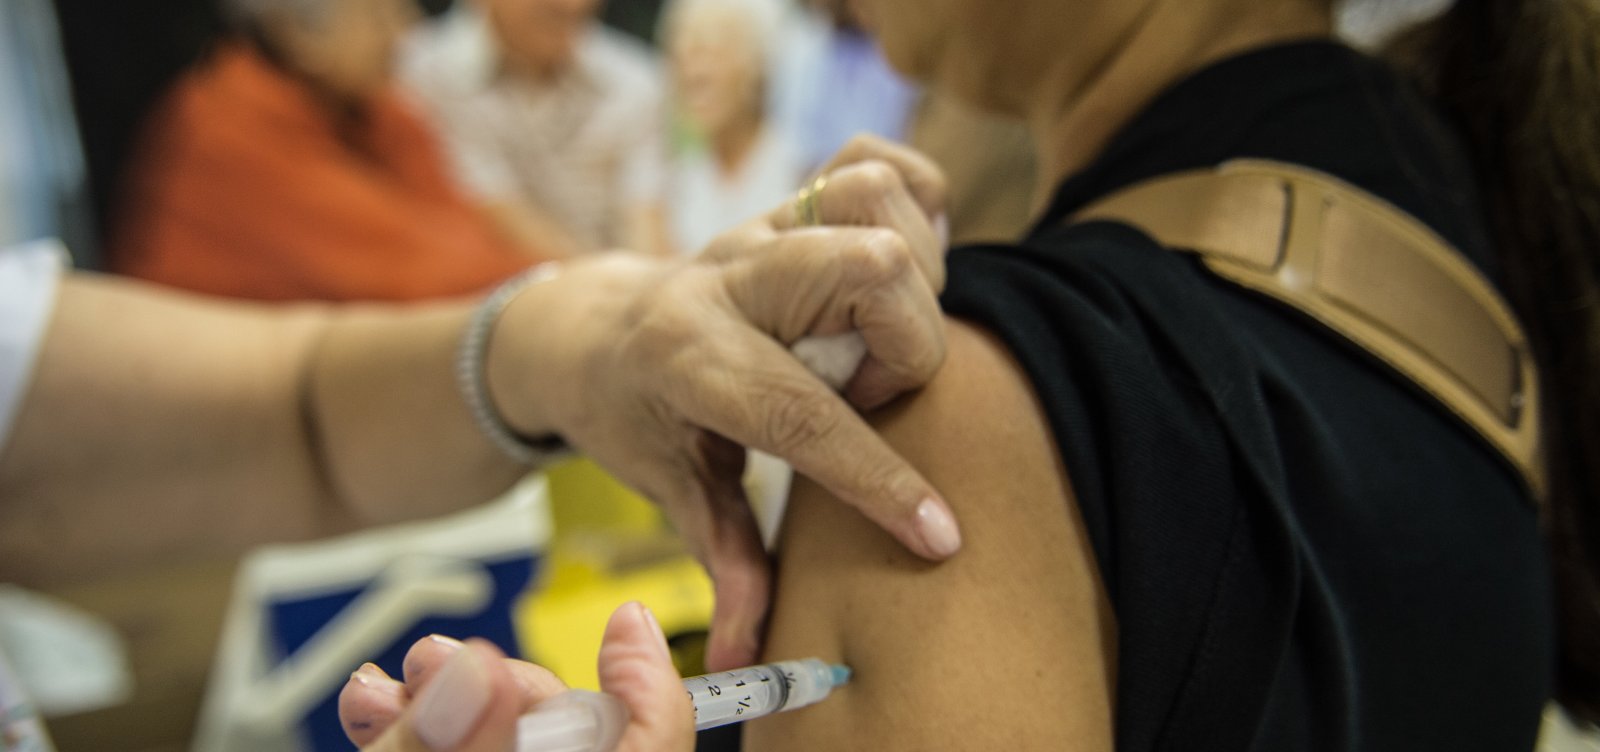 Ministério da Sáude recomenda imunização contra febre amarela antes do verão